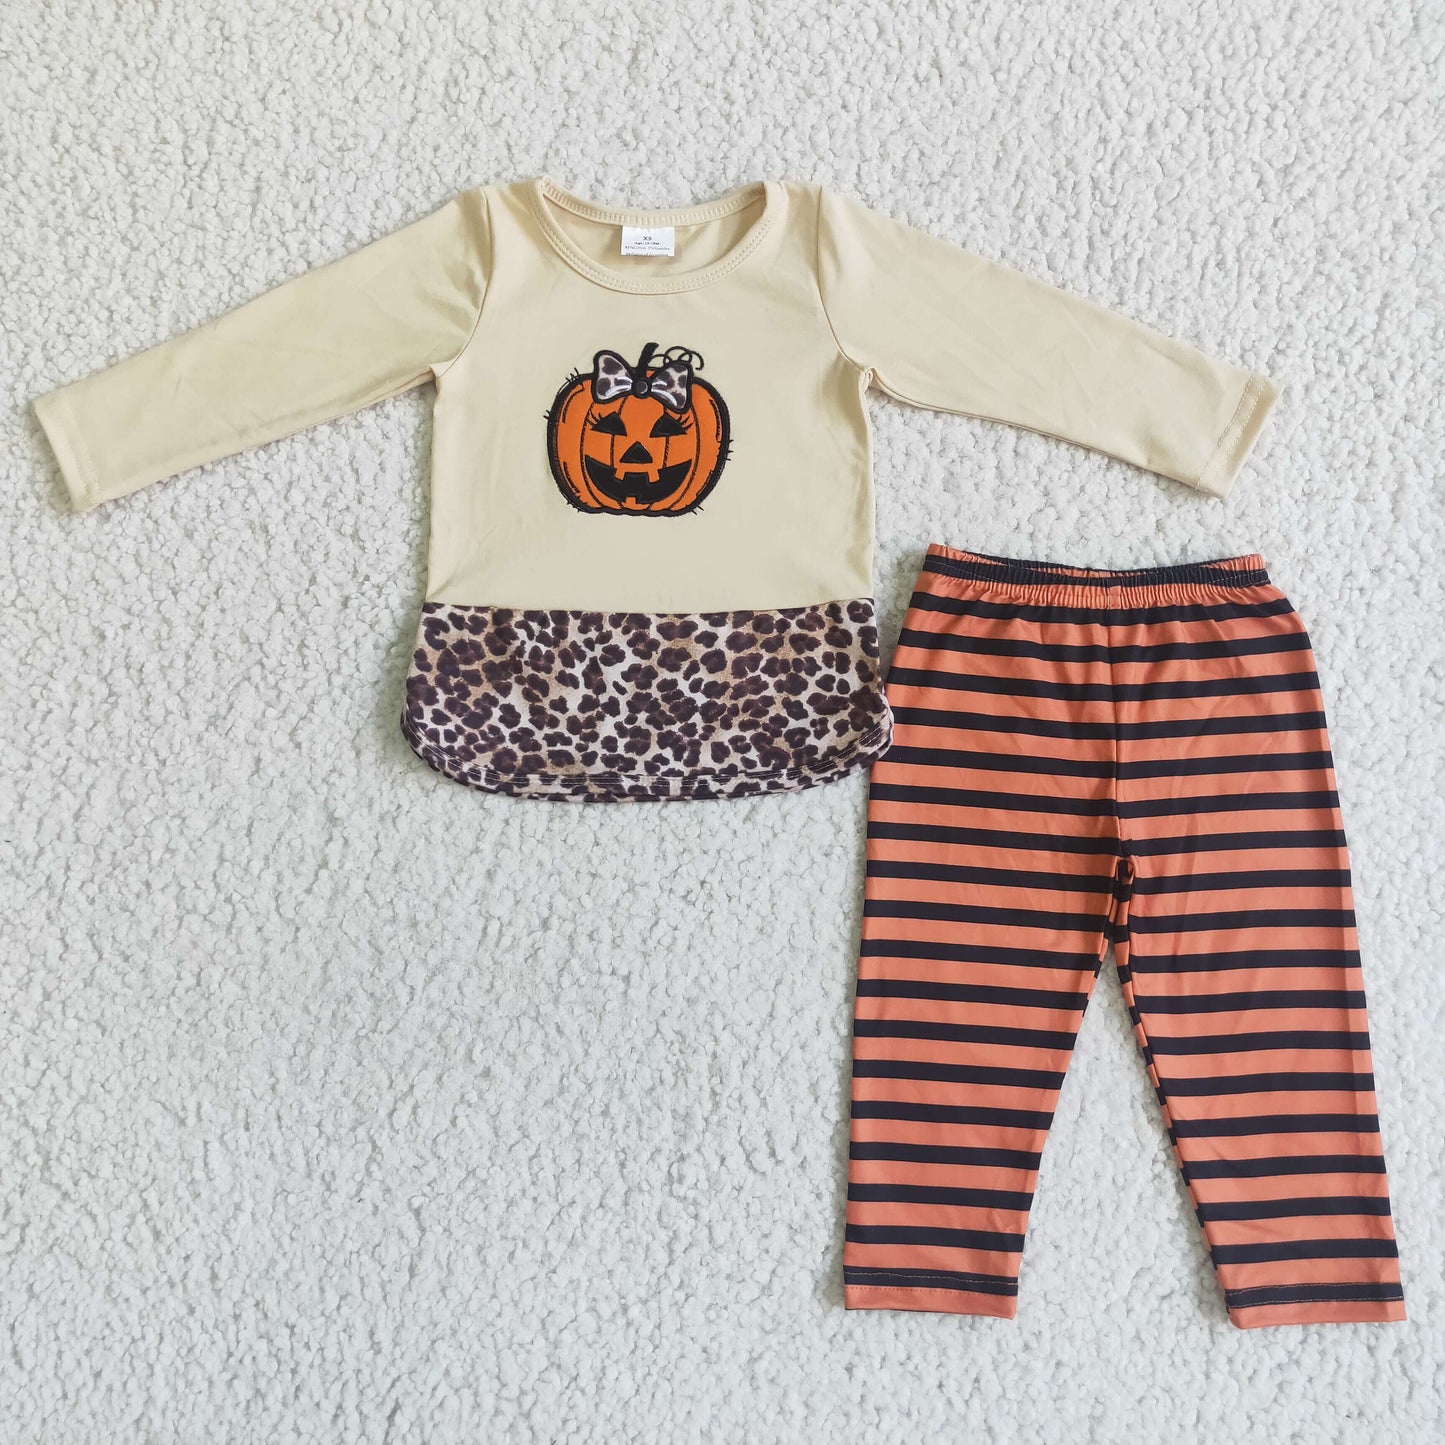 Pumpkin embroidery leopard shirt stripe leggings girls Halloween outfits